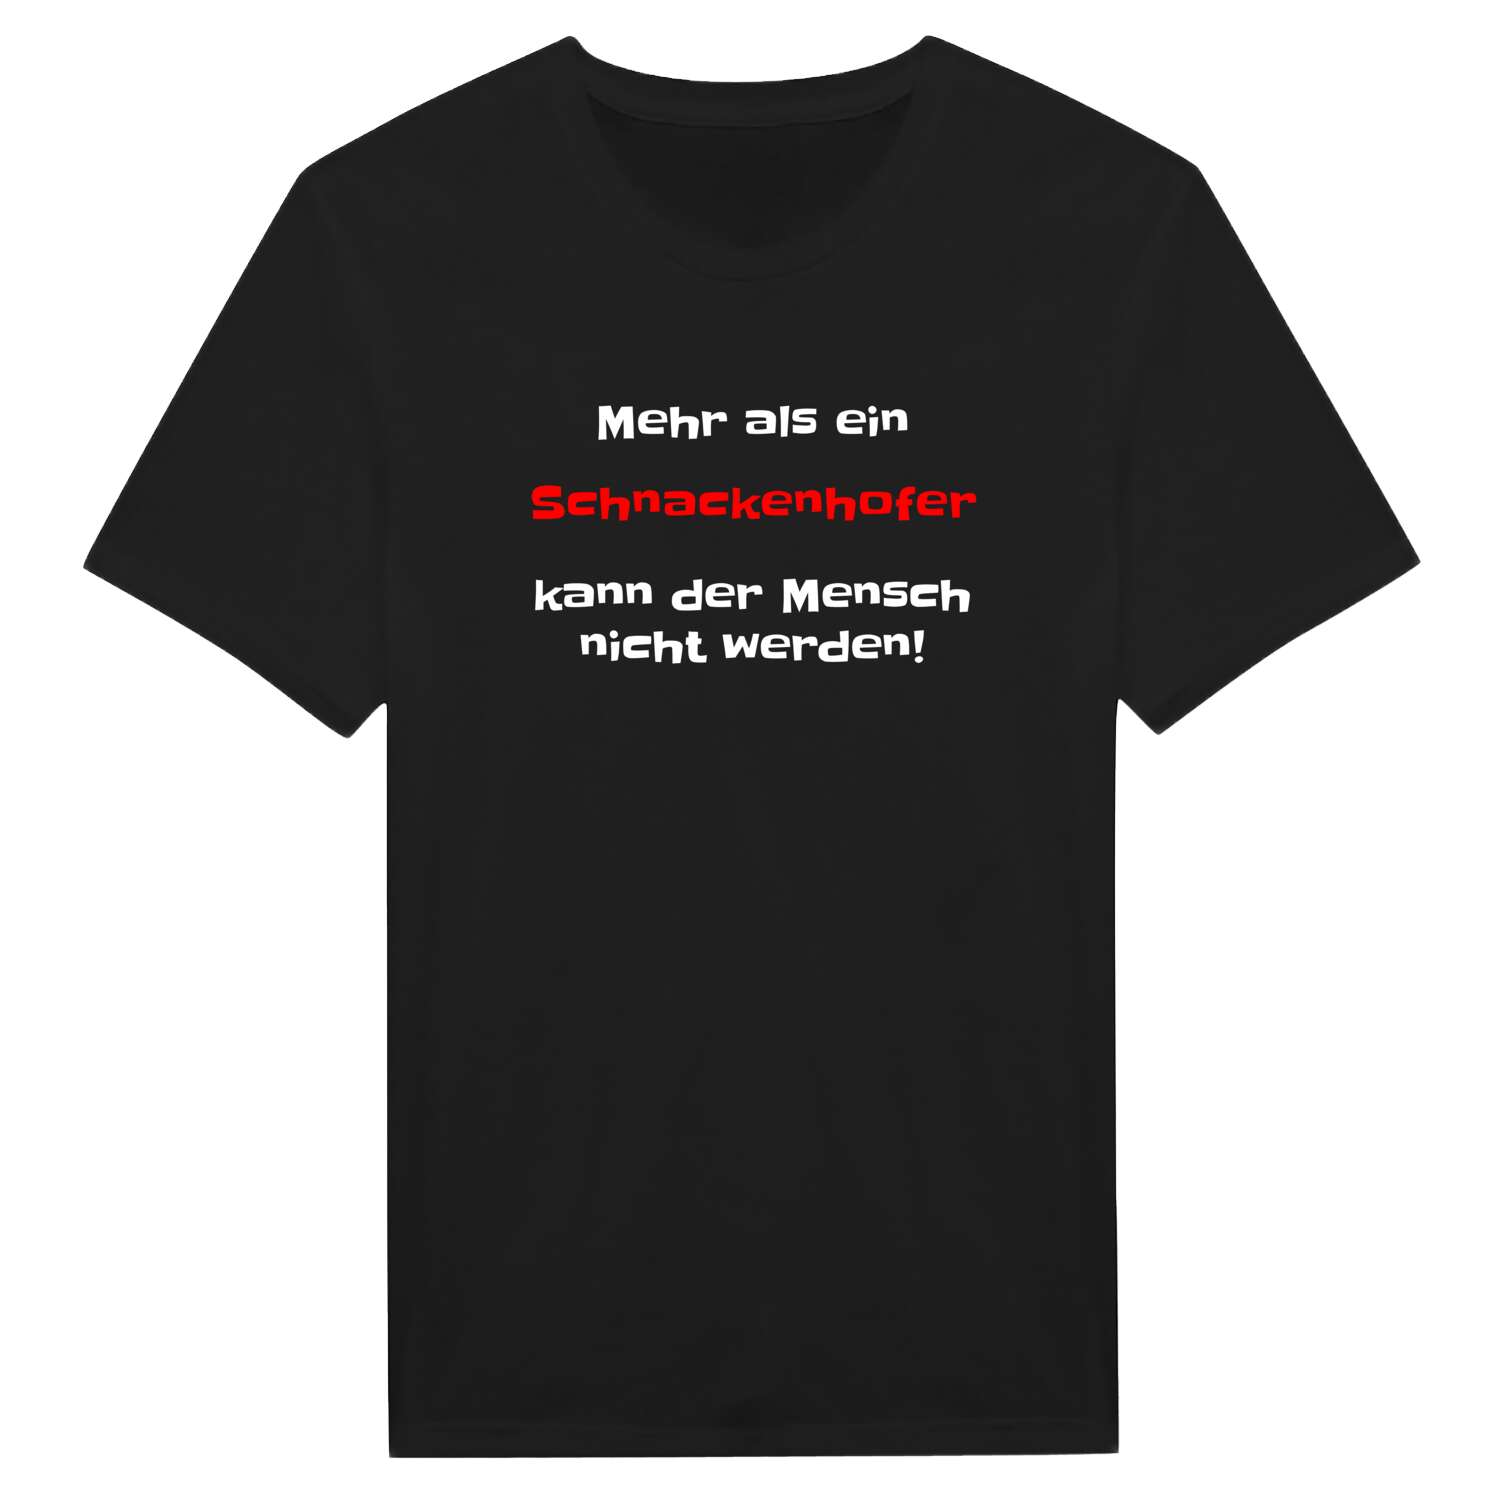 Schnackenhof T-Shirt »Mehr als ein«